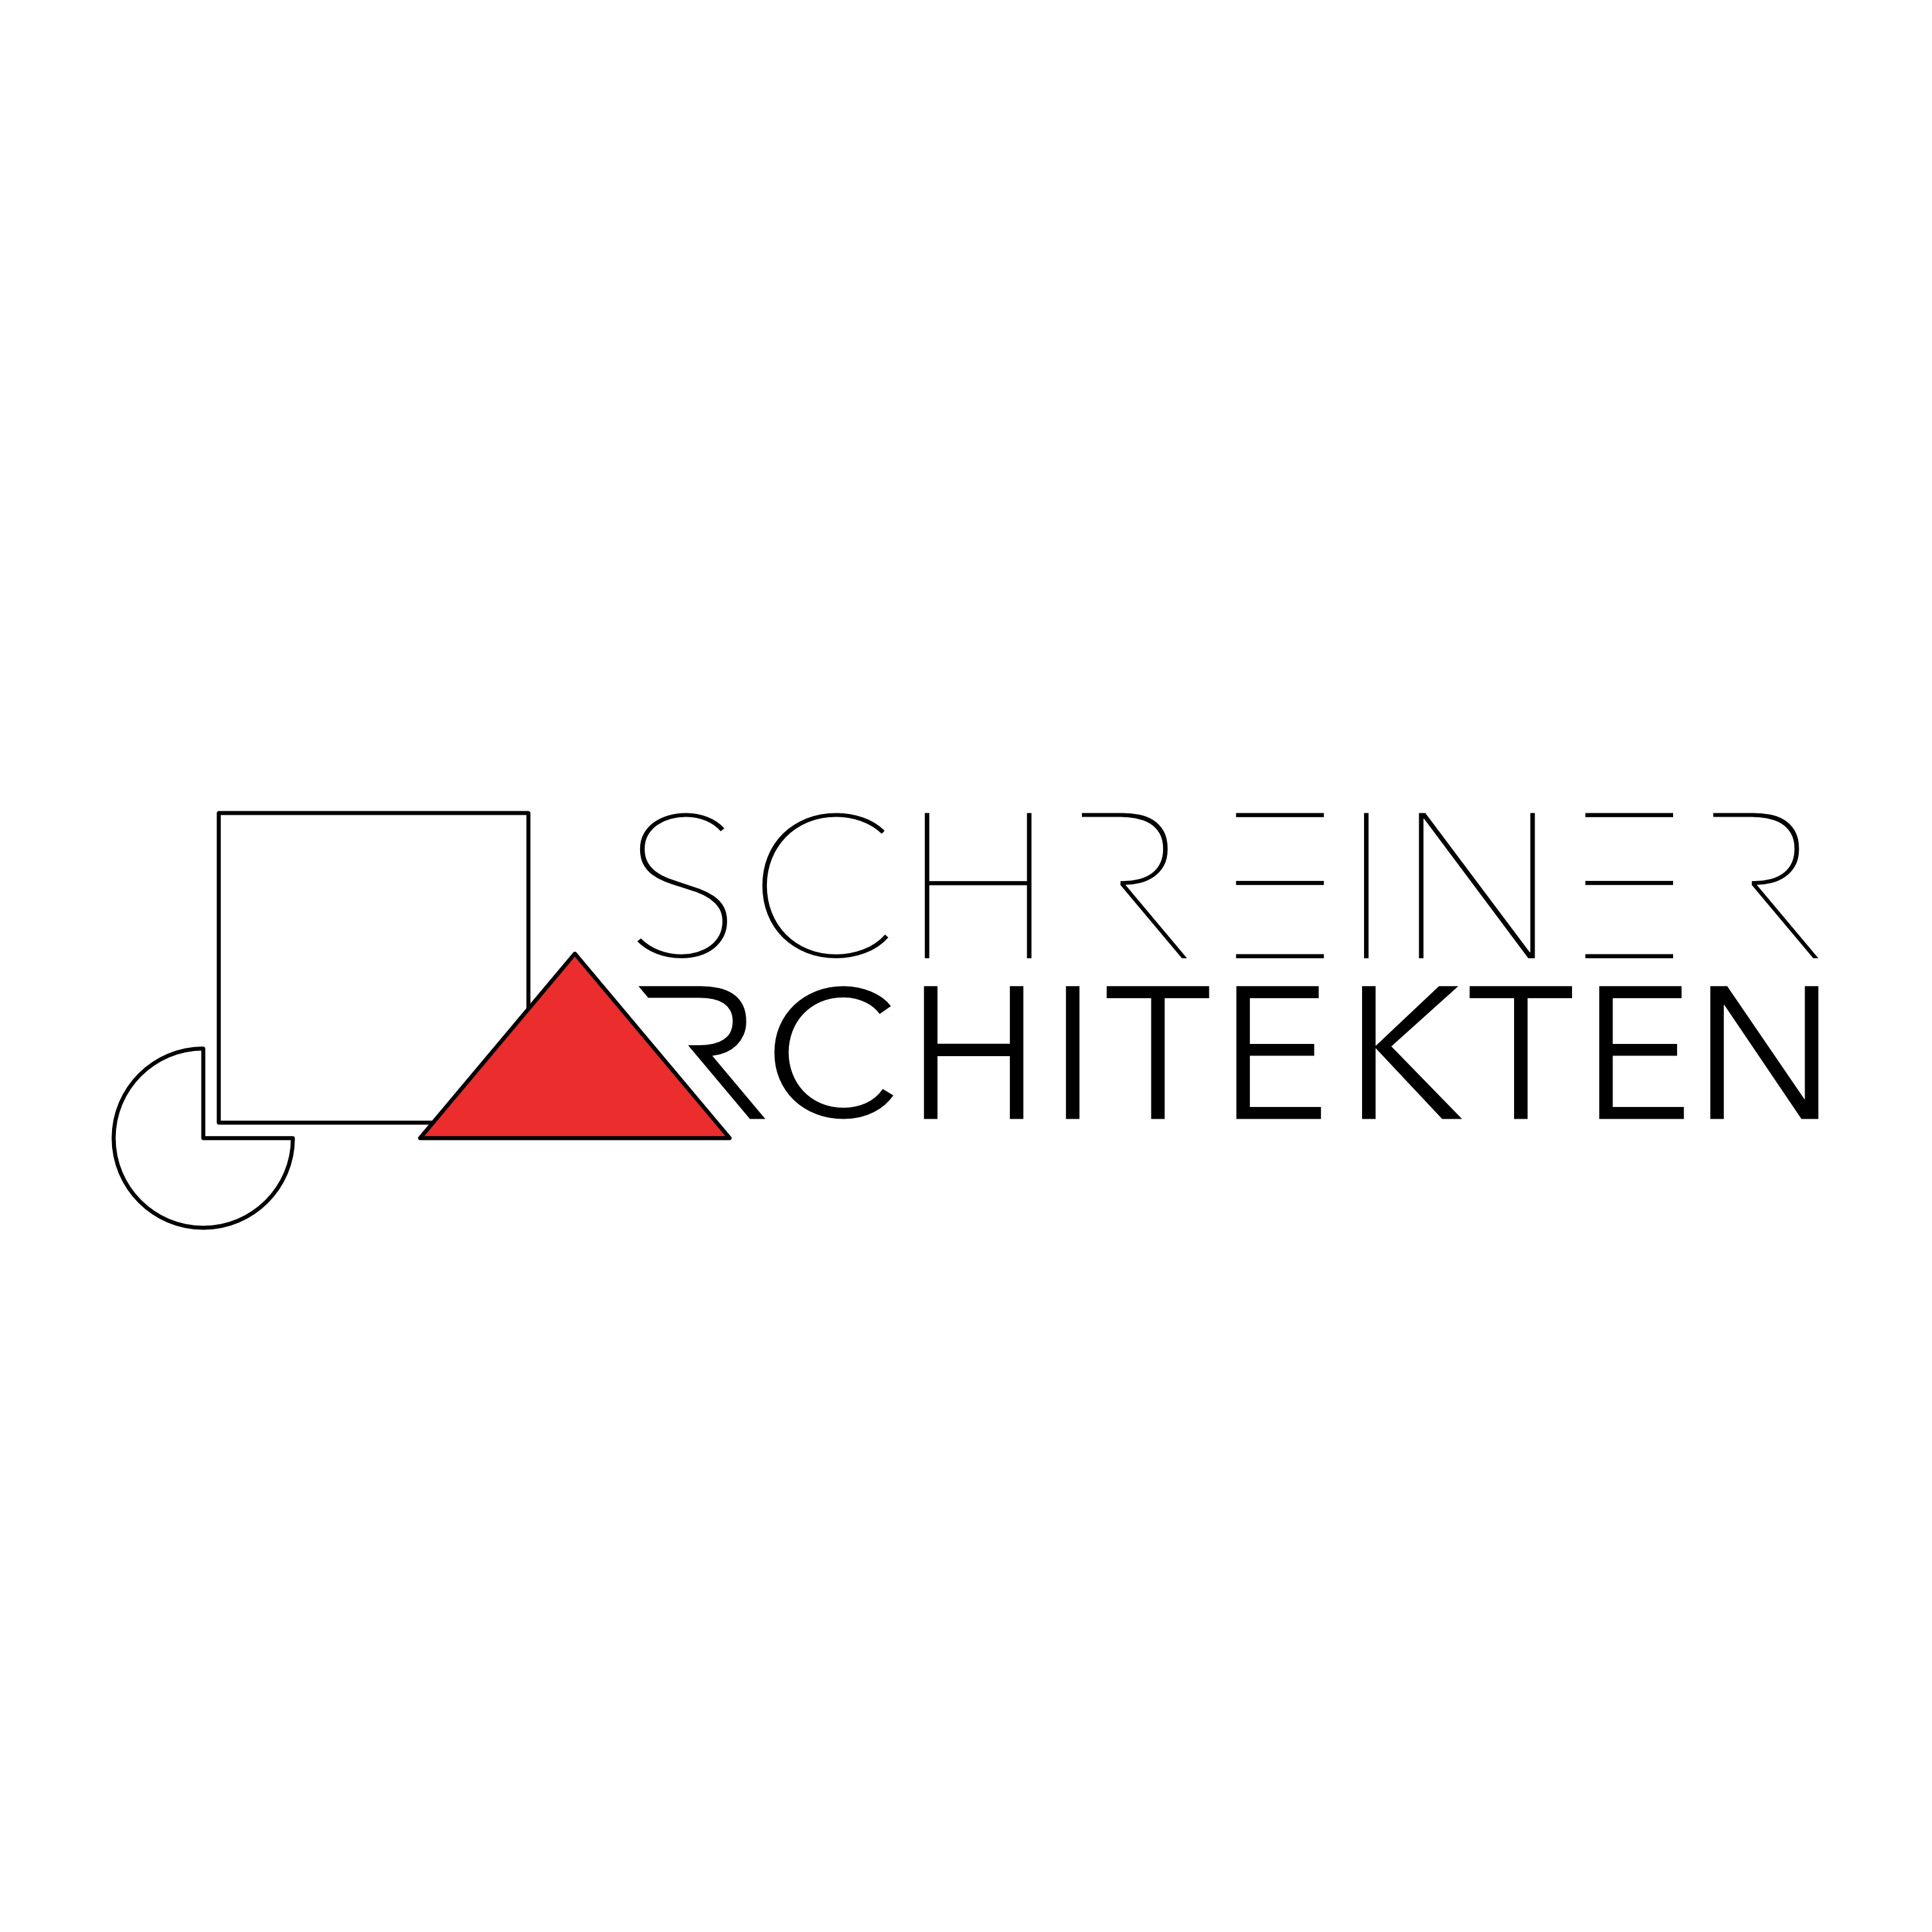 Schreiner Architekten